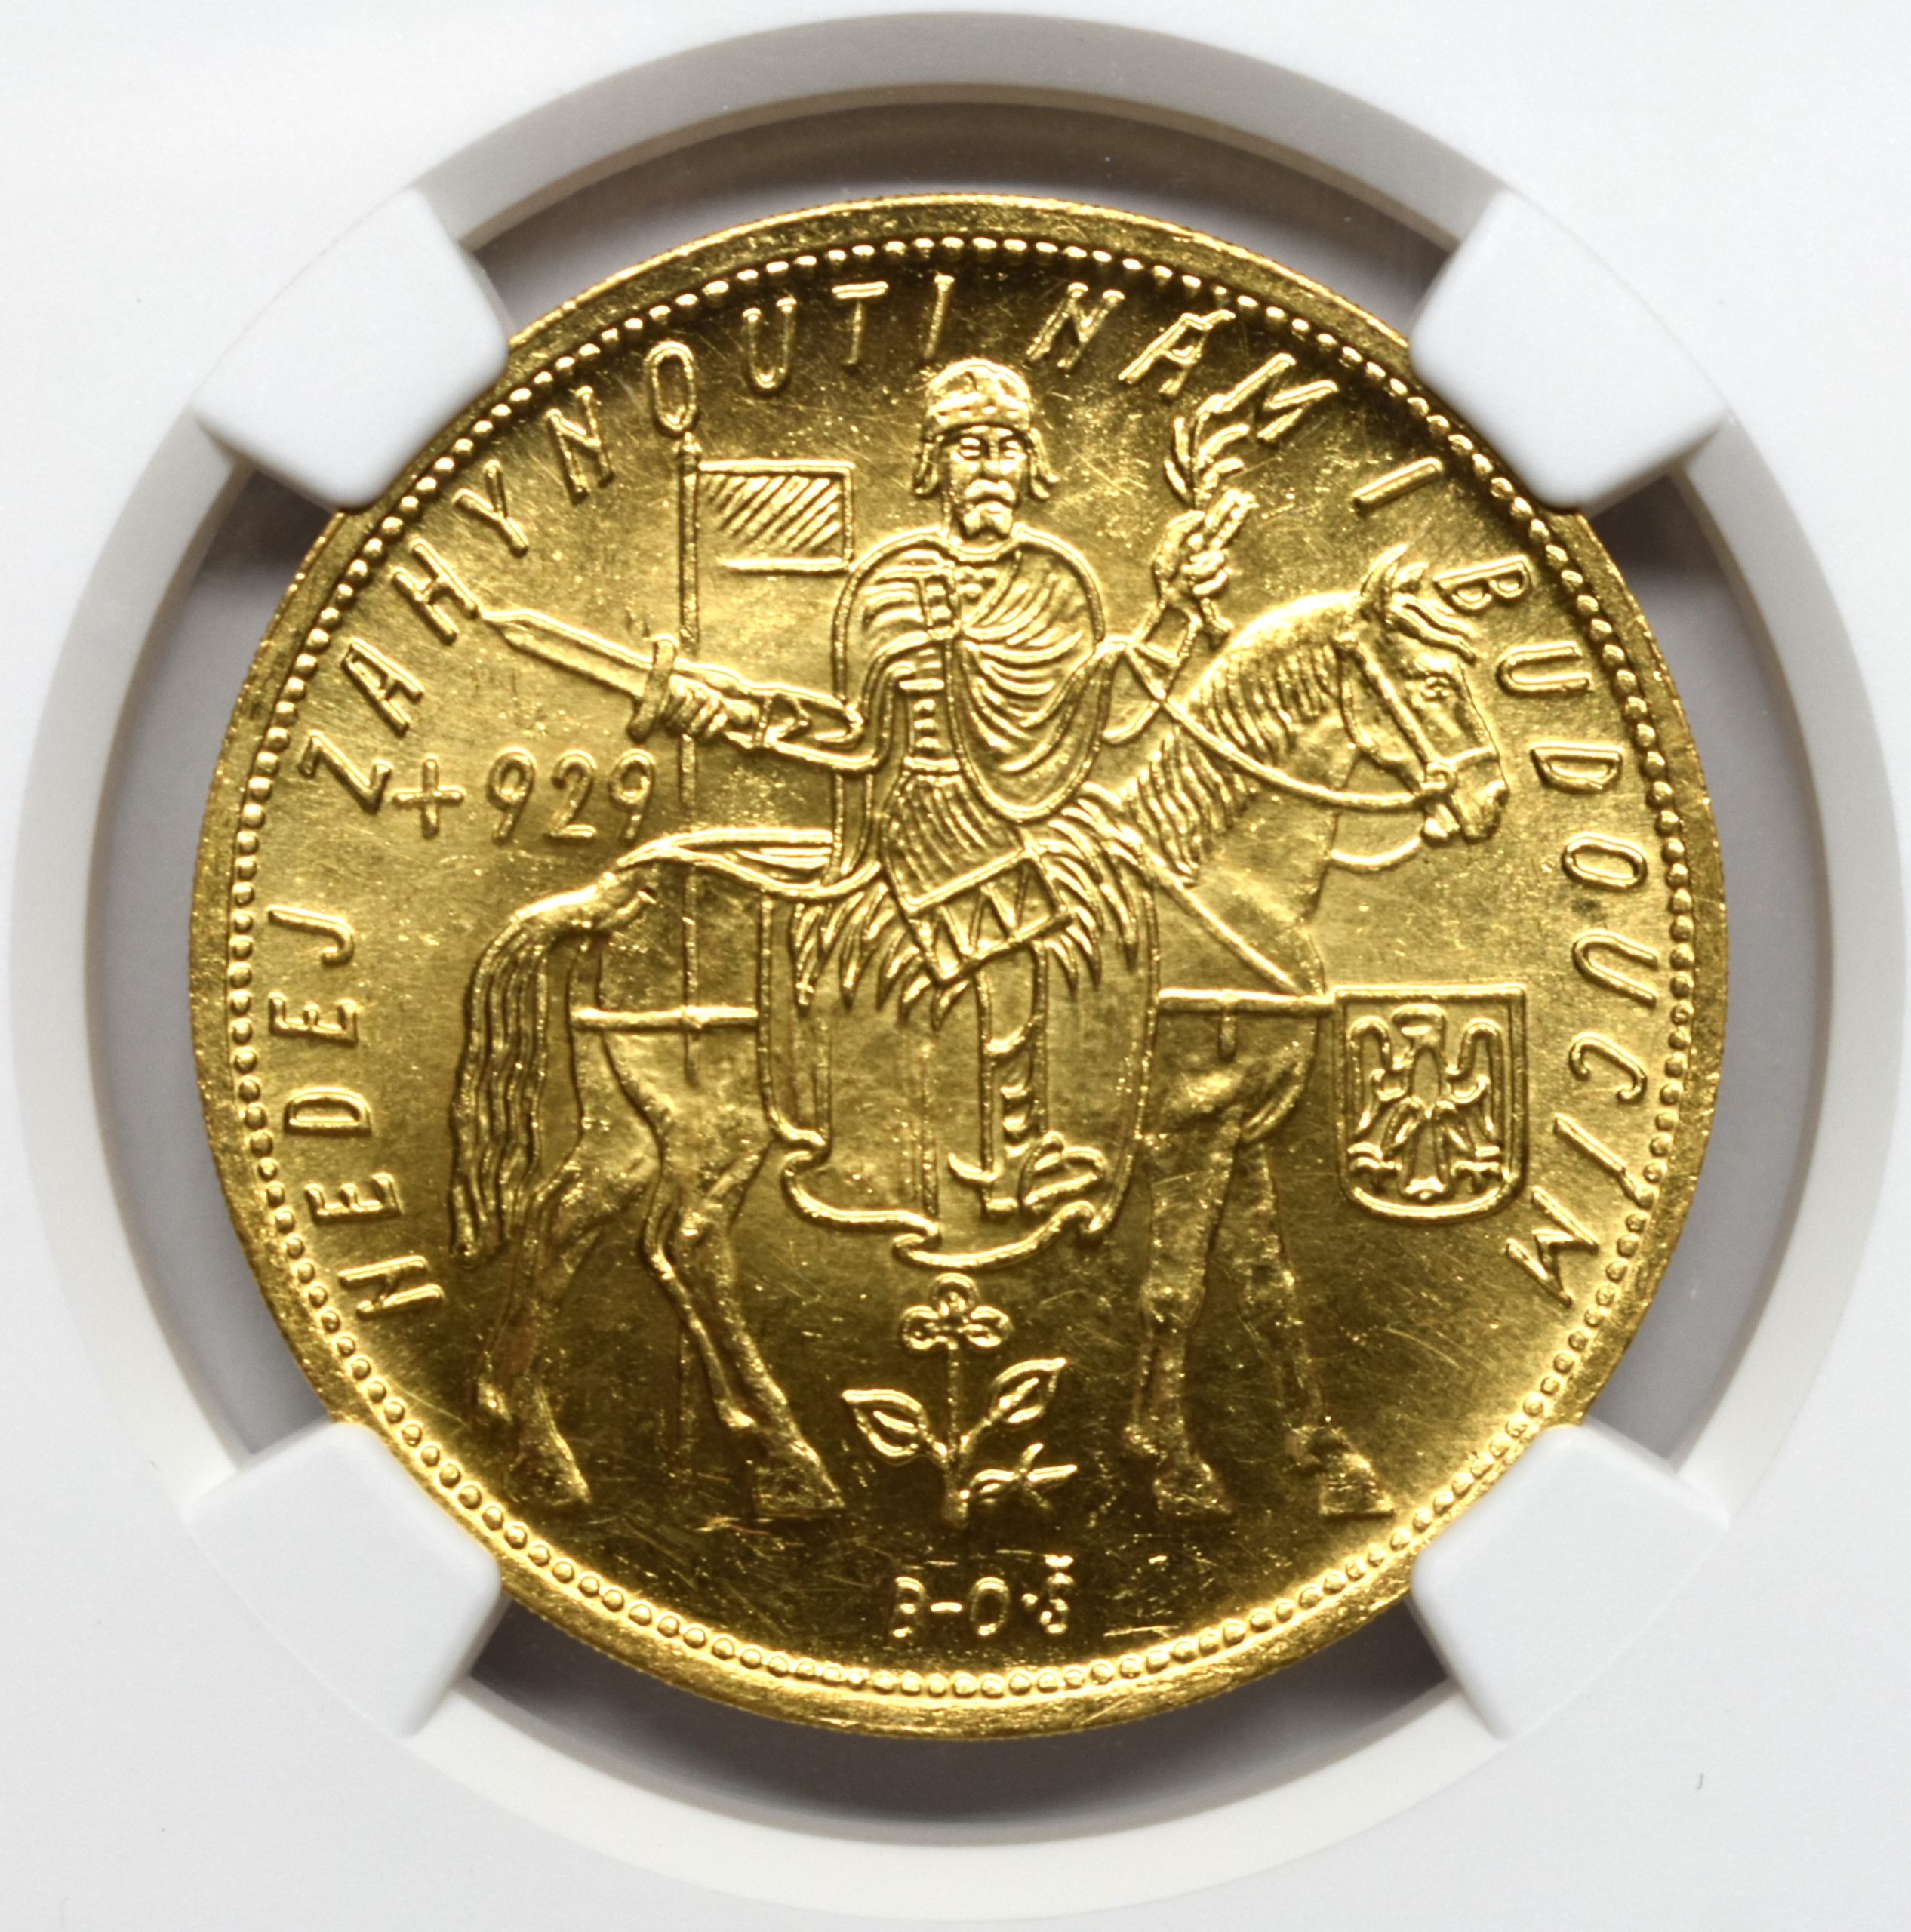 Sold】1933年 チェコ 5ダカット金貨 MS64 NGC | ソブリンパートナーズ